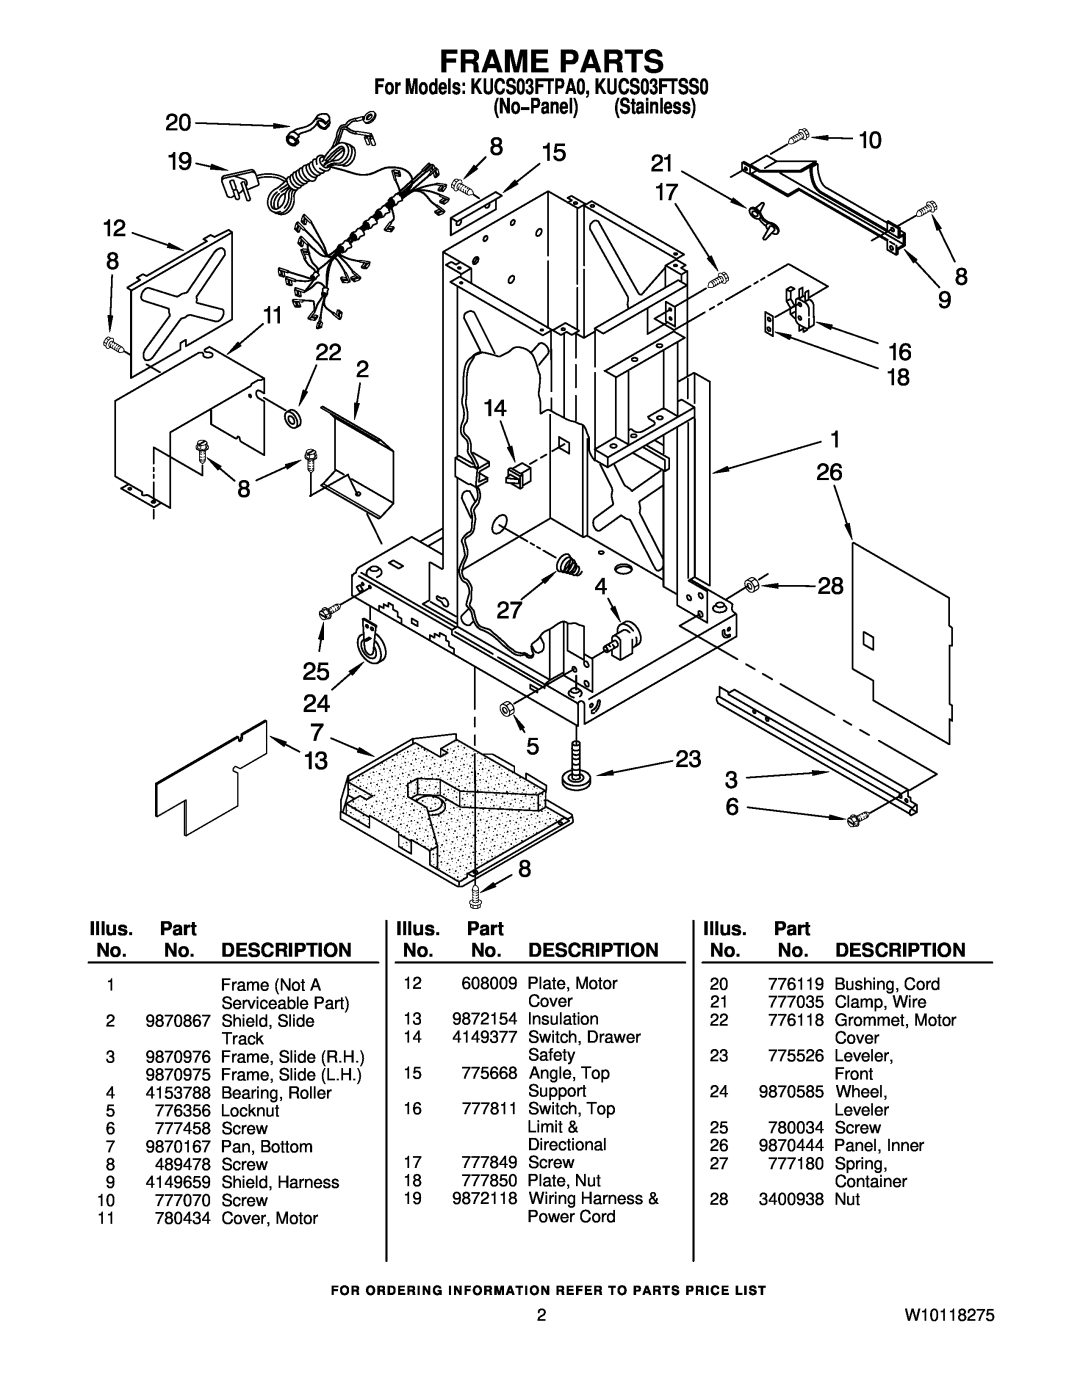 KitchenAid manual Frame Parts, For Models KUCS03FTPA0, KUCS03FTSS0, No−Panel Stainless, Illus. Part No. No. DESCRIPTION 